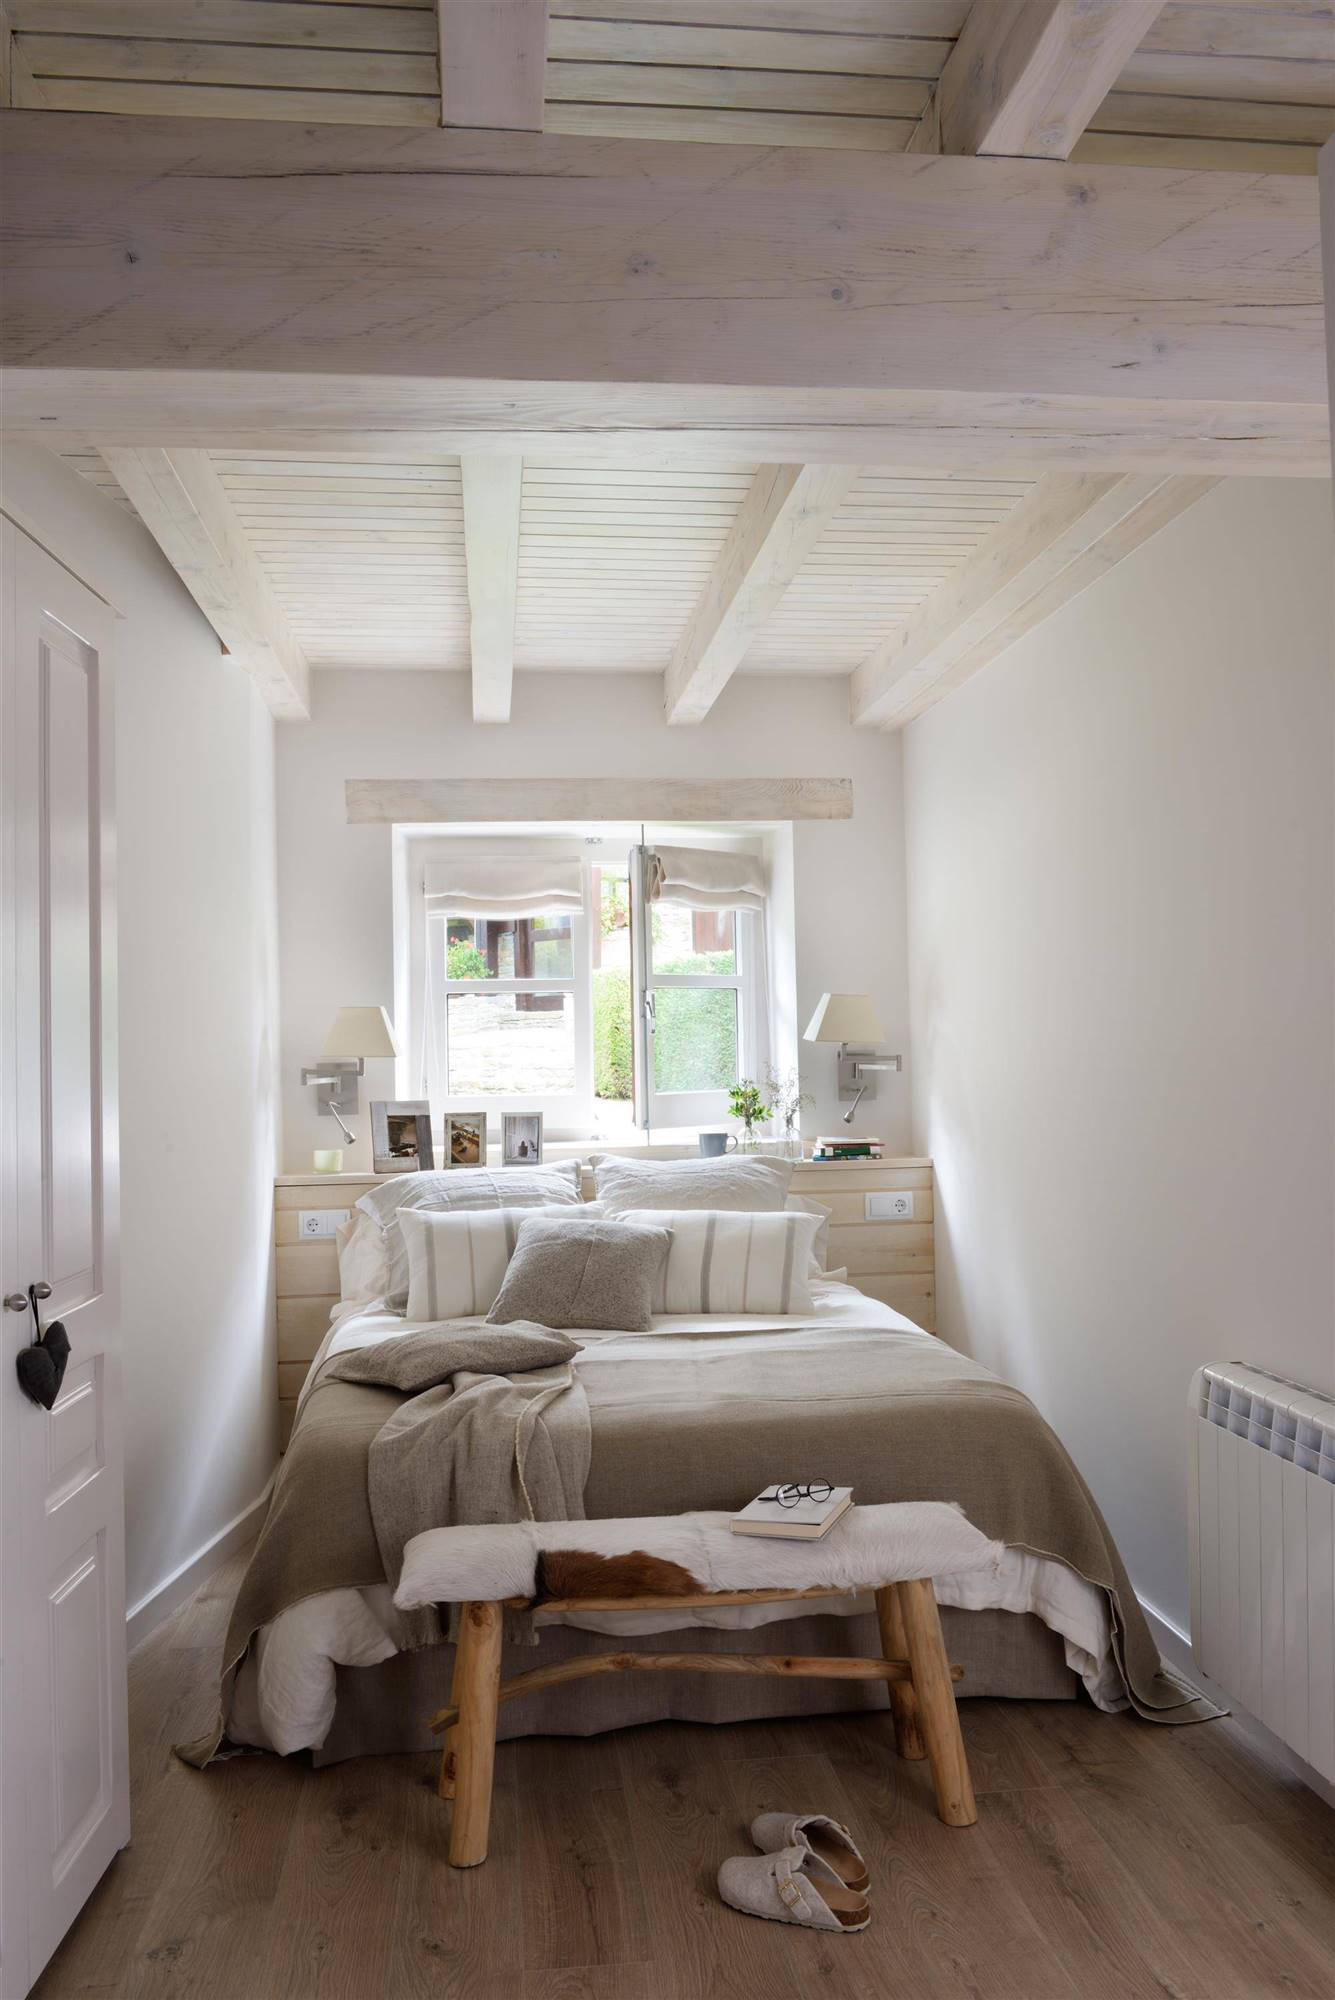 Dormitorio de estilo nórdico con cabecero realizado a medida y banco a los pies de la cama.